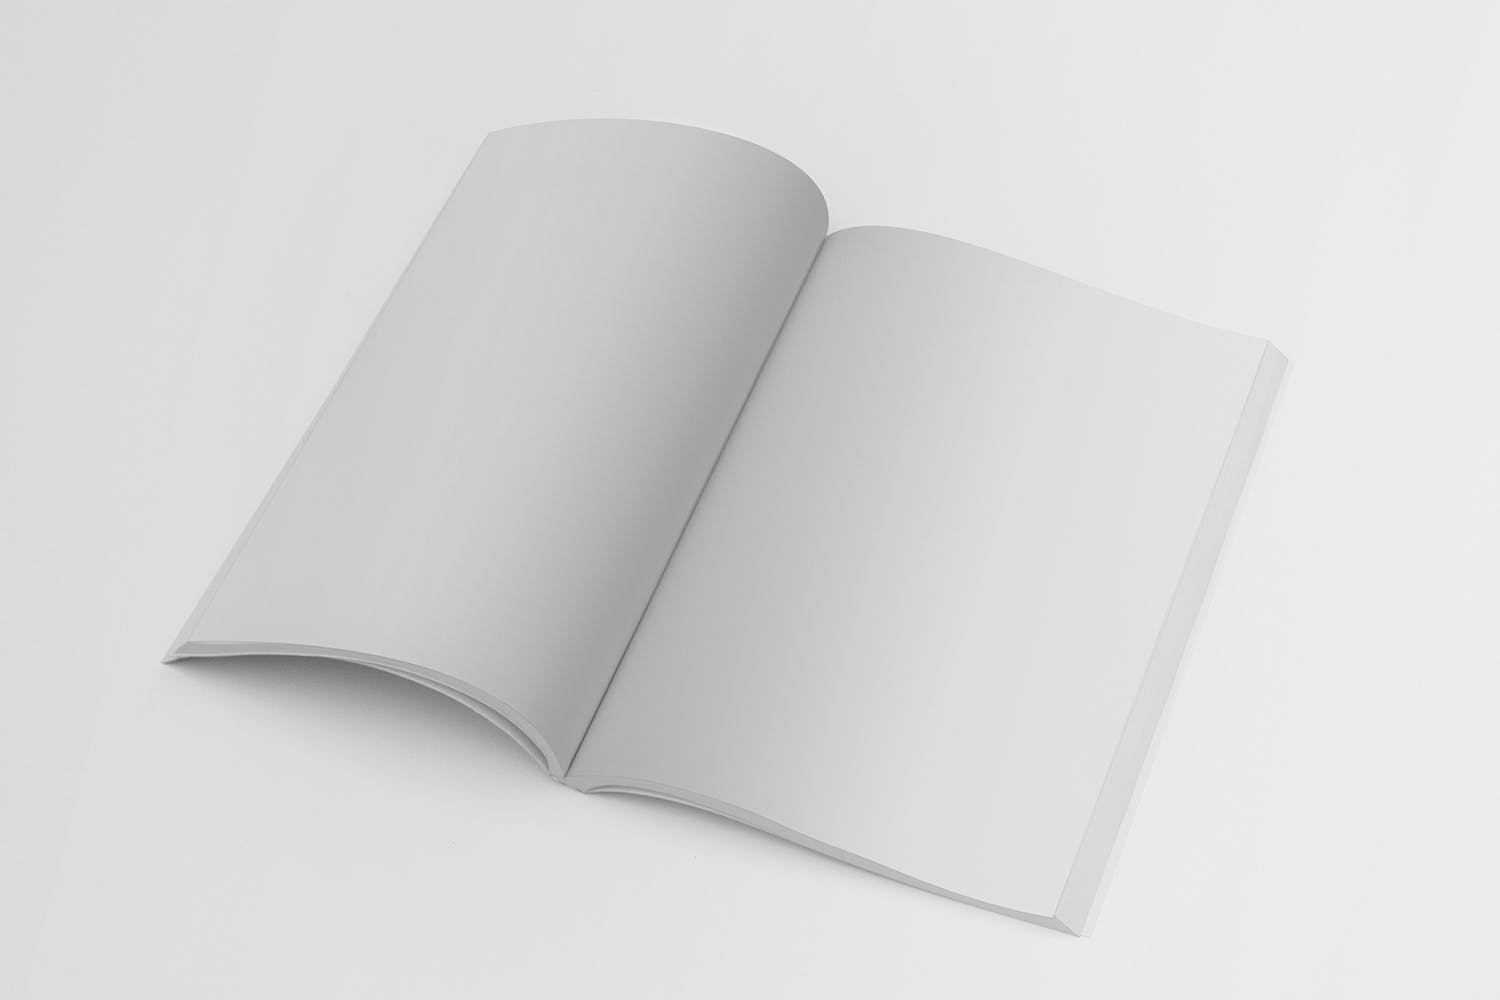 杂志内页版式设计翻页效果图样机蚂蚁素材精选 Magazine Mockup Folded Page插图(1)